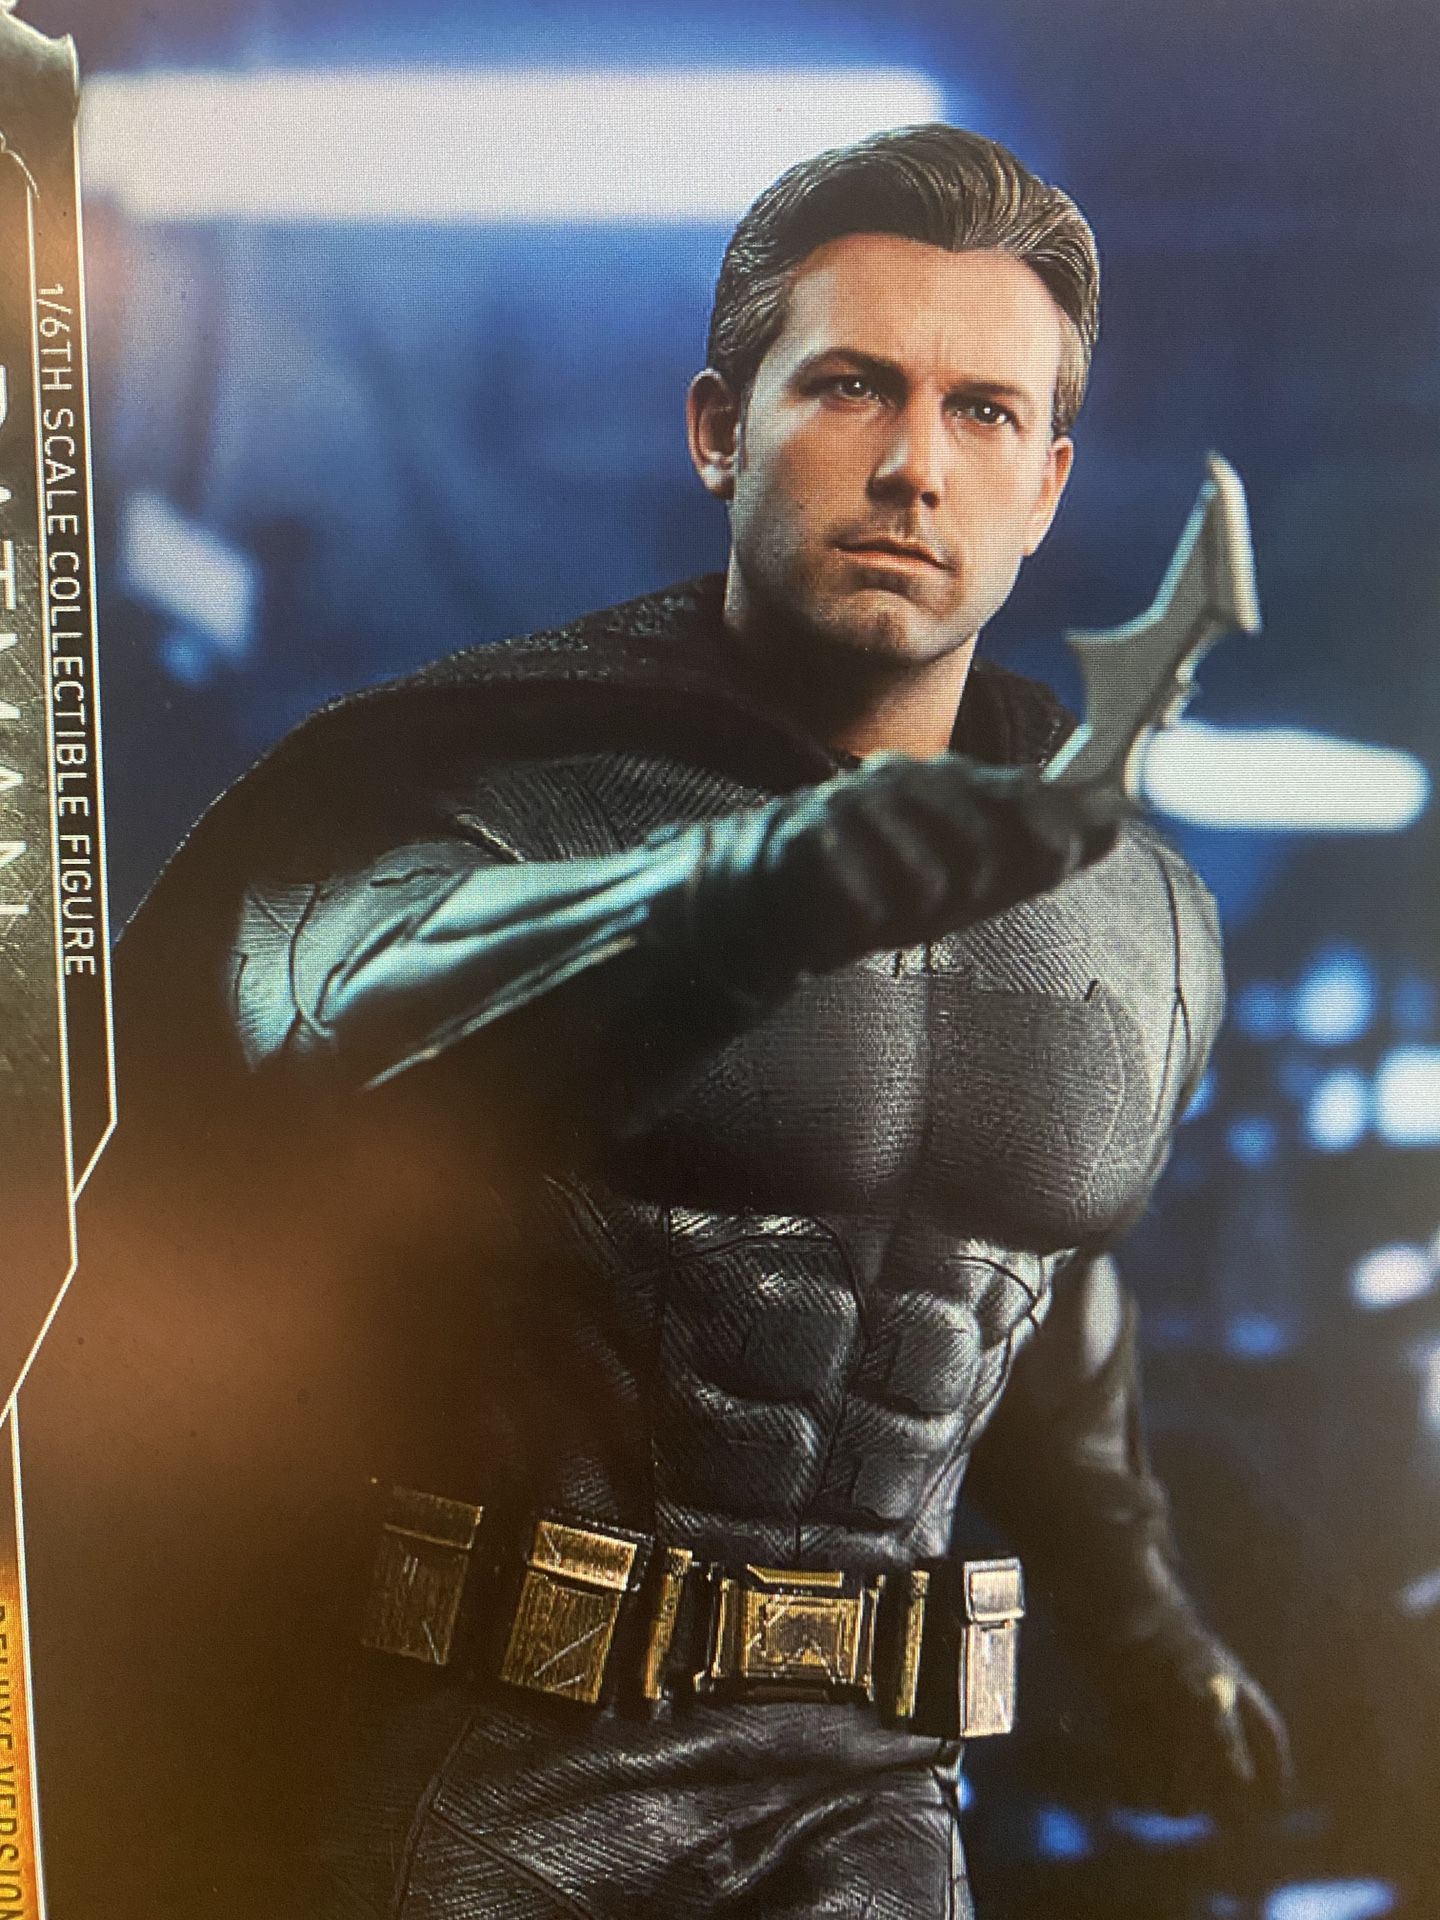 Deluxe Batman Hot Toys Figure Mms456 Justice League Ben Afleck